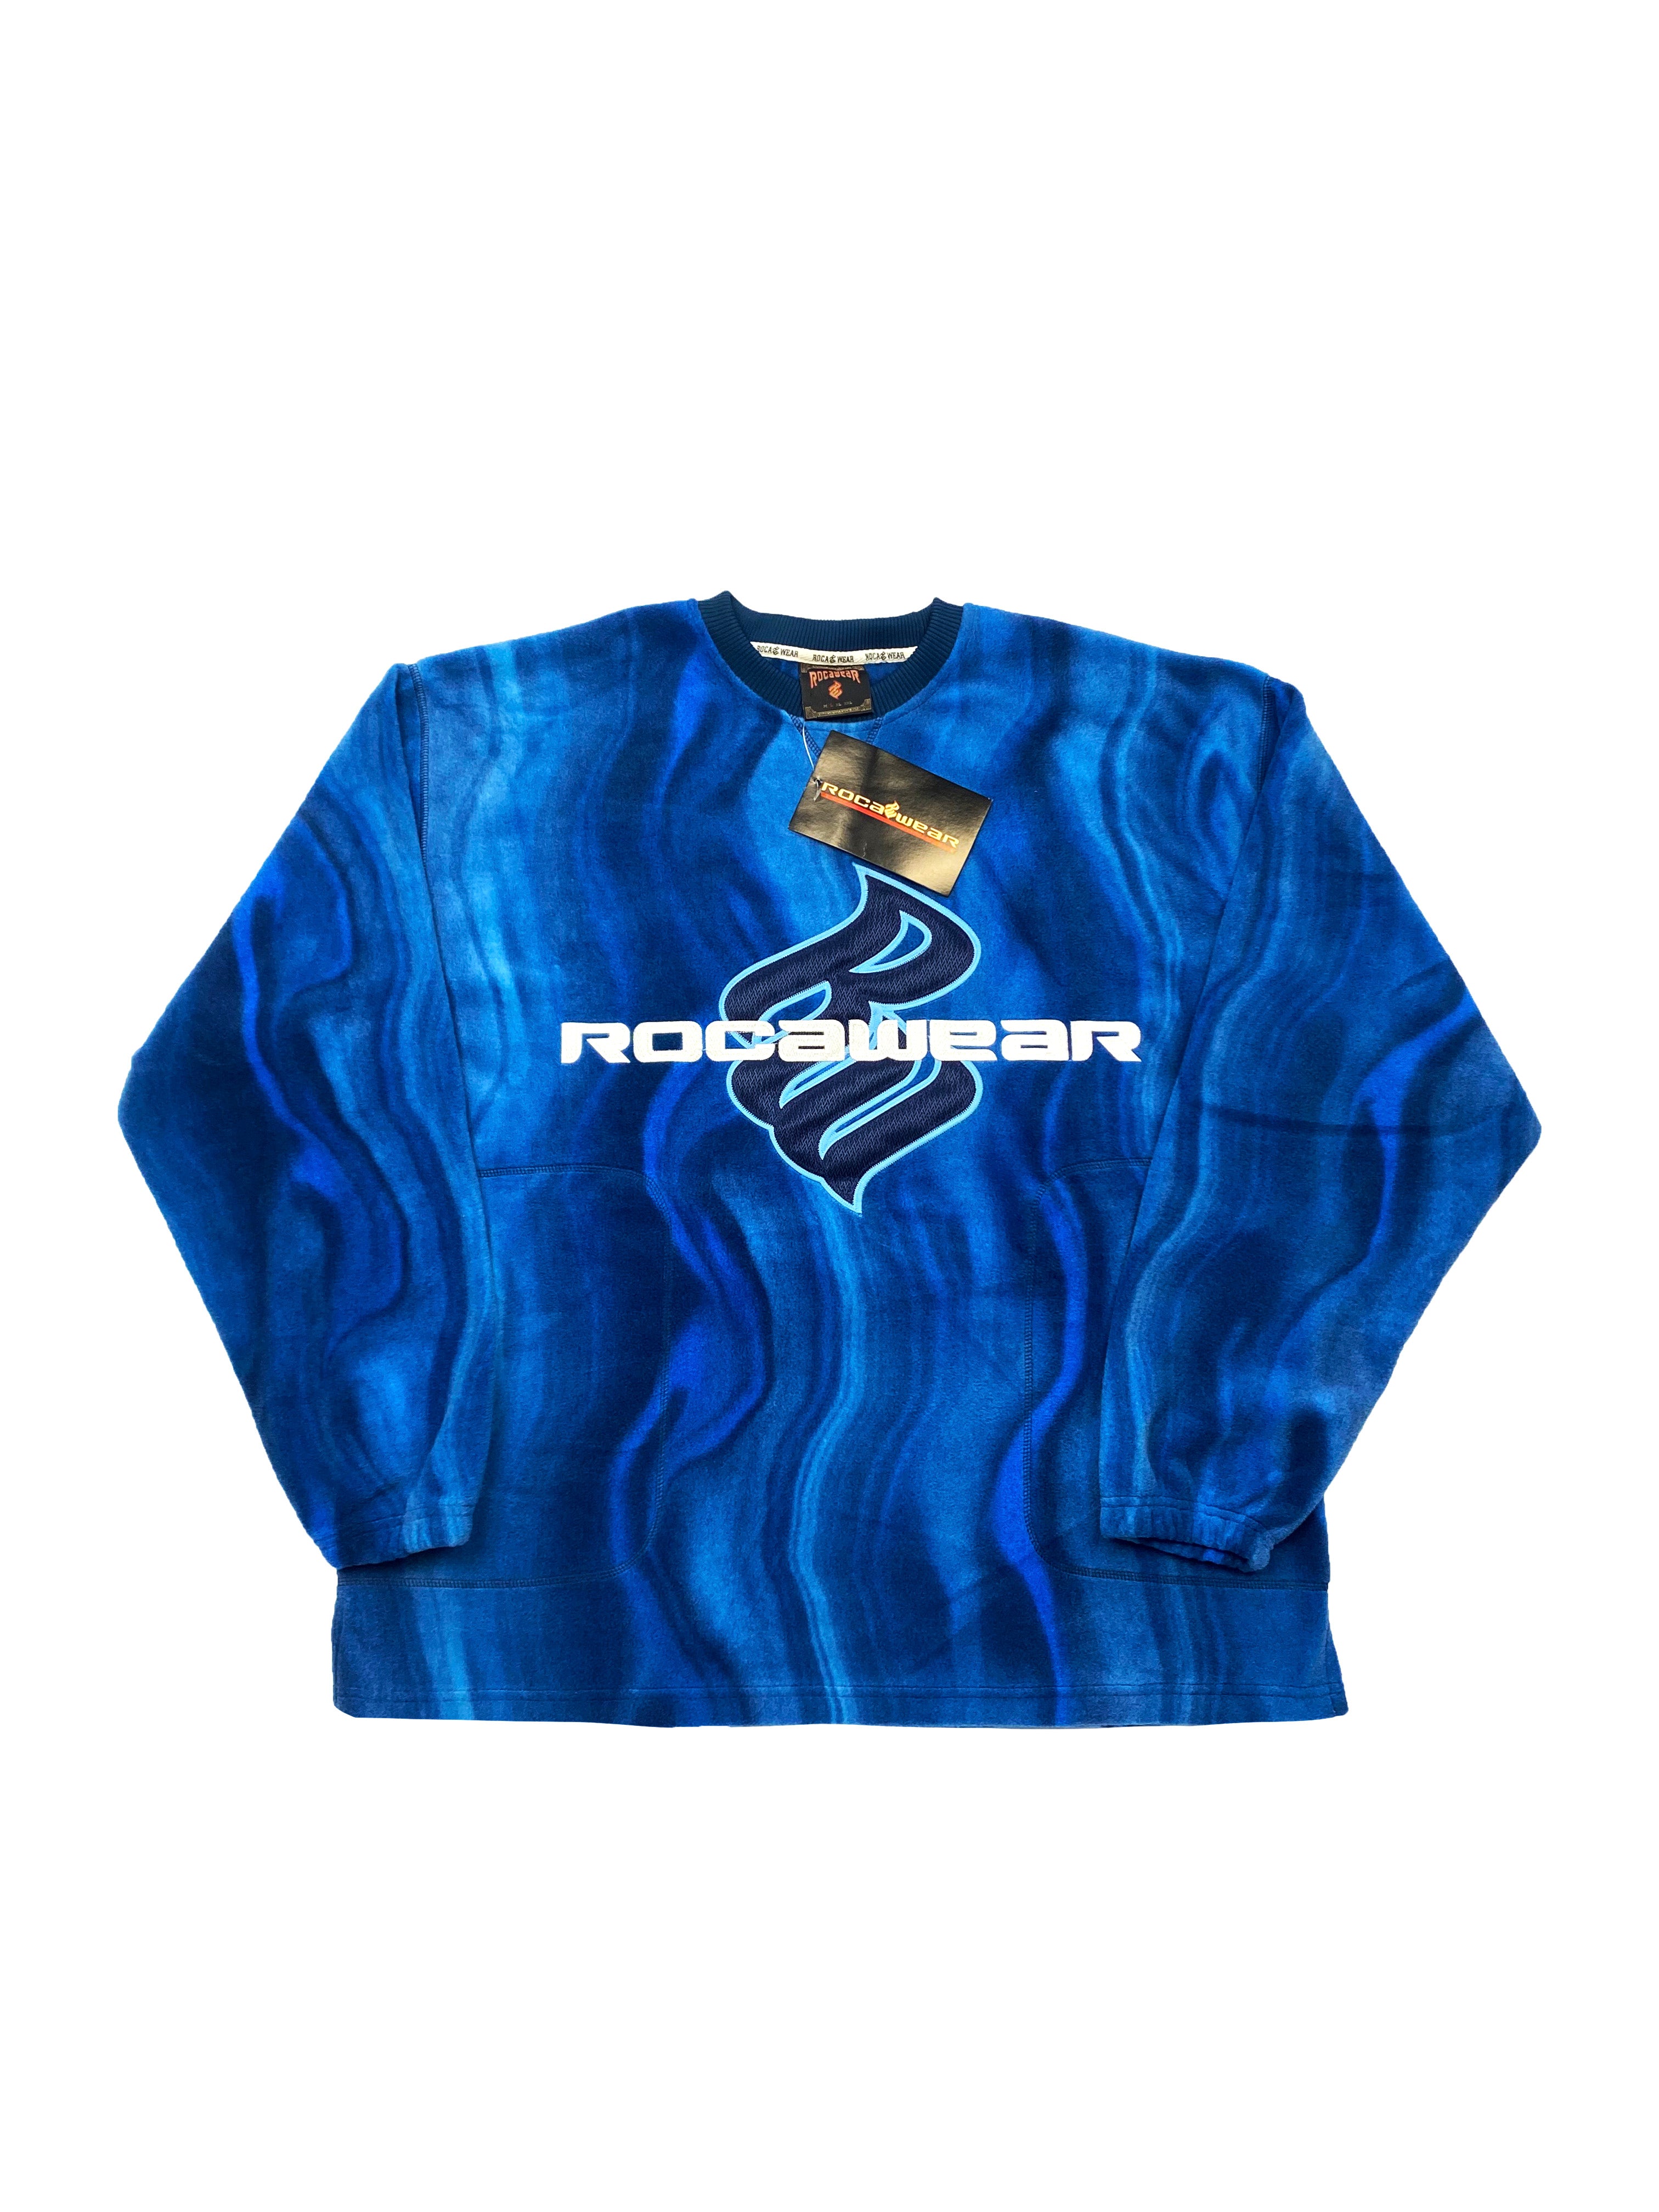 Rocawear Blue Tie-Dye Fleece BNWT 00's